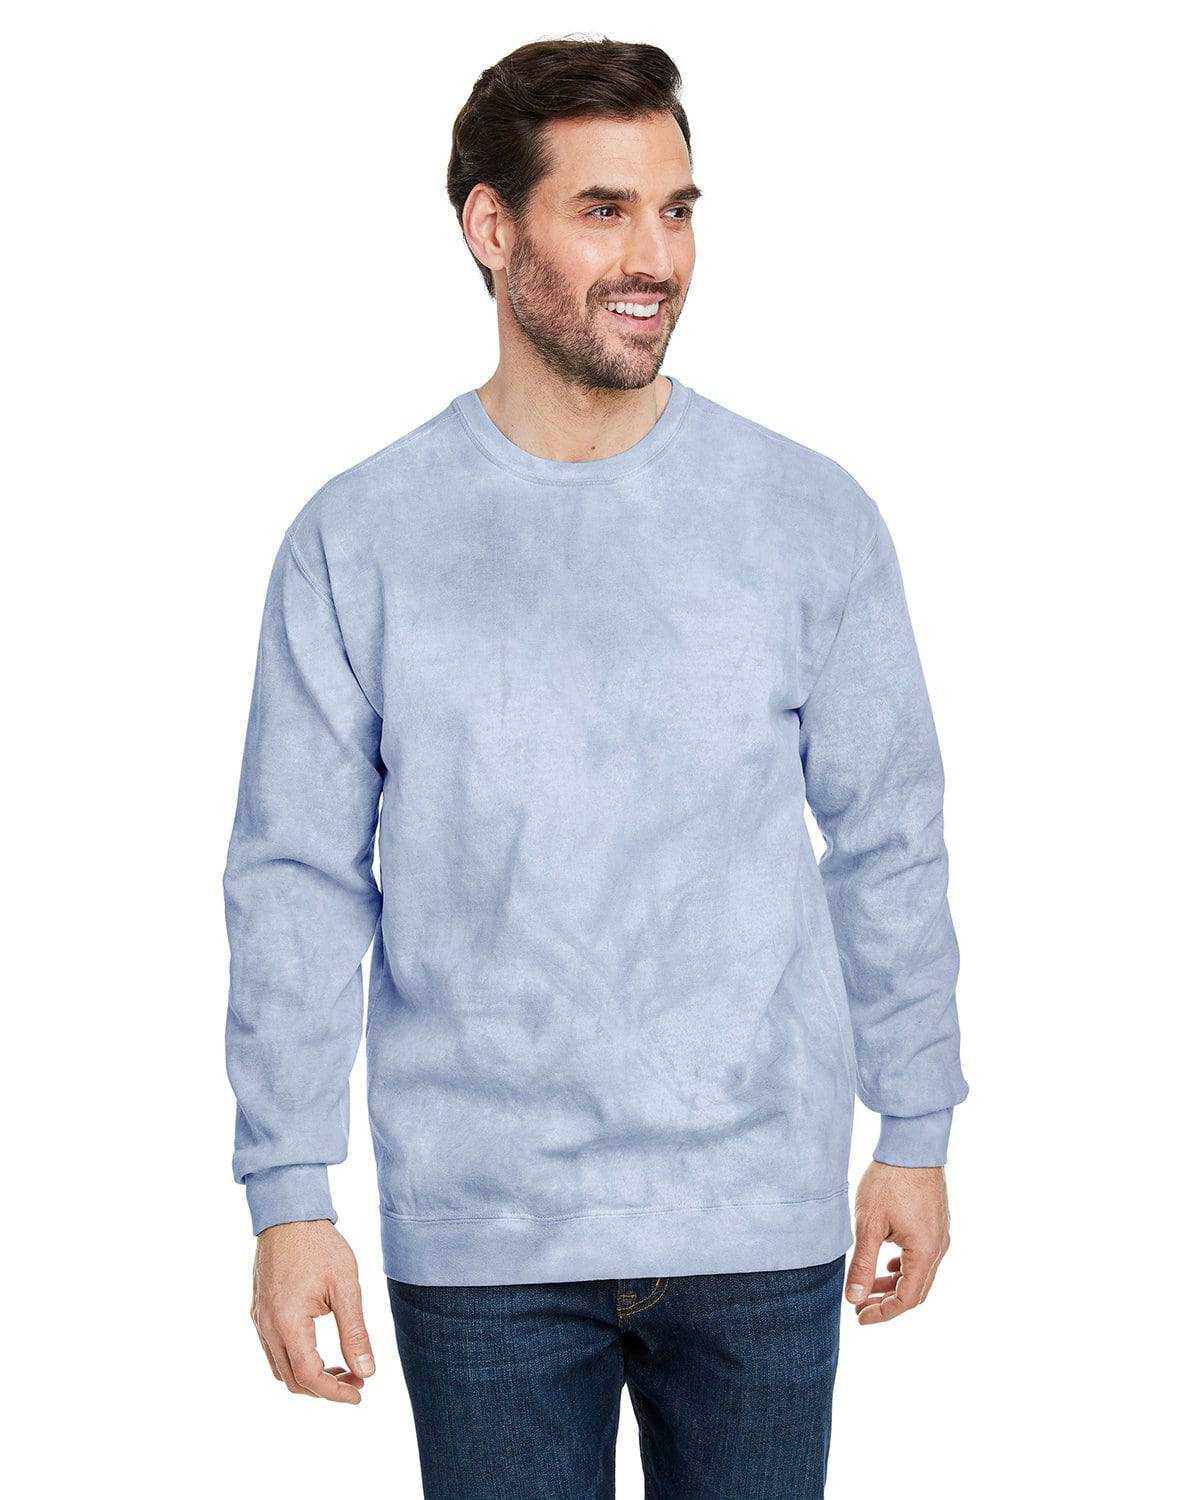 Comfort Colors 1545 Colorblast Crewneck Sweatshirt - Ocean - HIT a Double